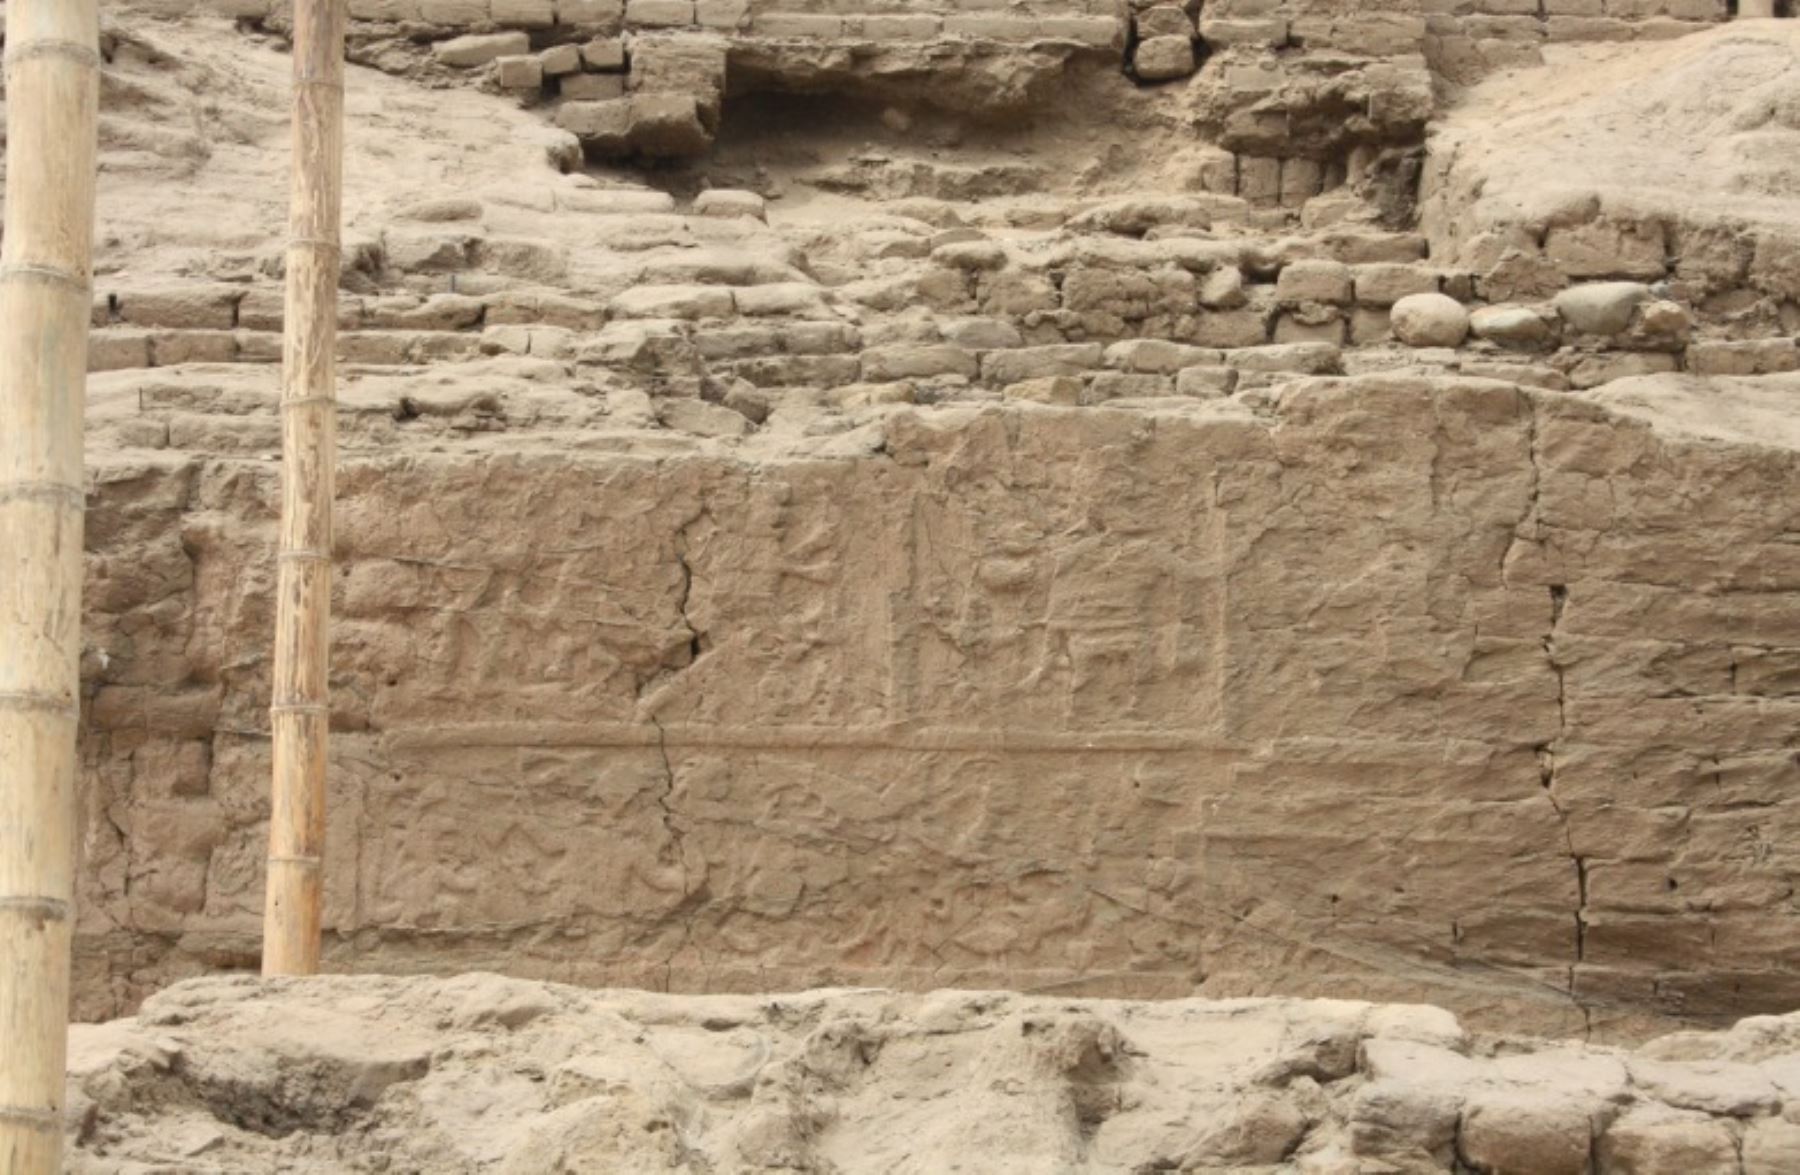 La investigación descubrió además dos murales que muestran dos personajes Moche.